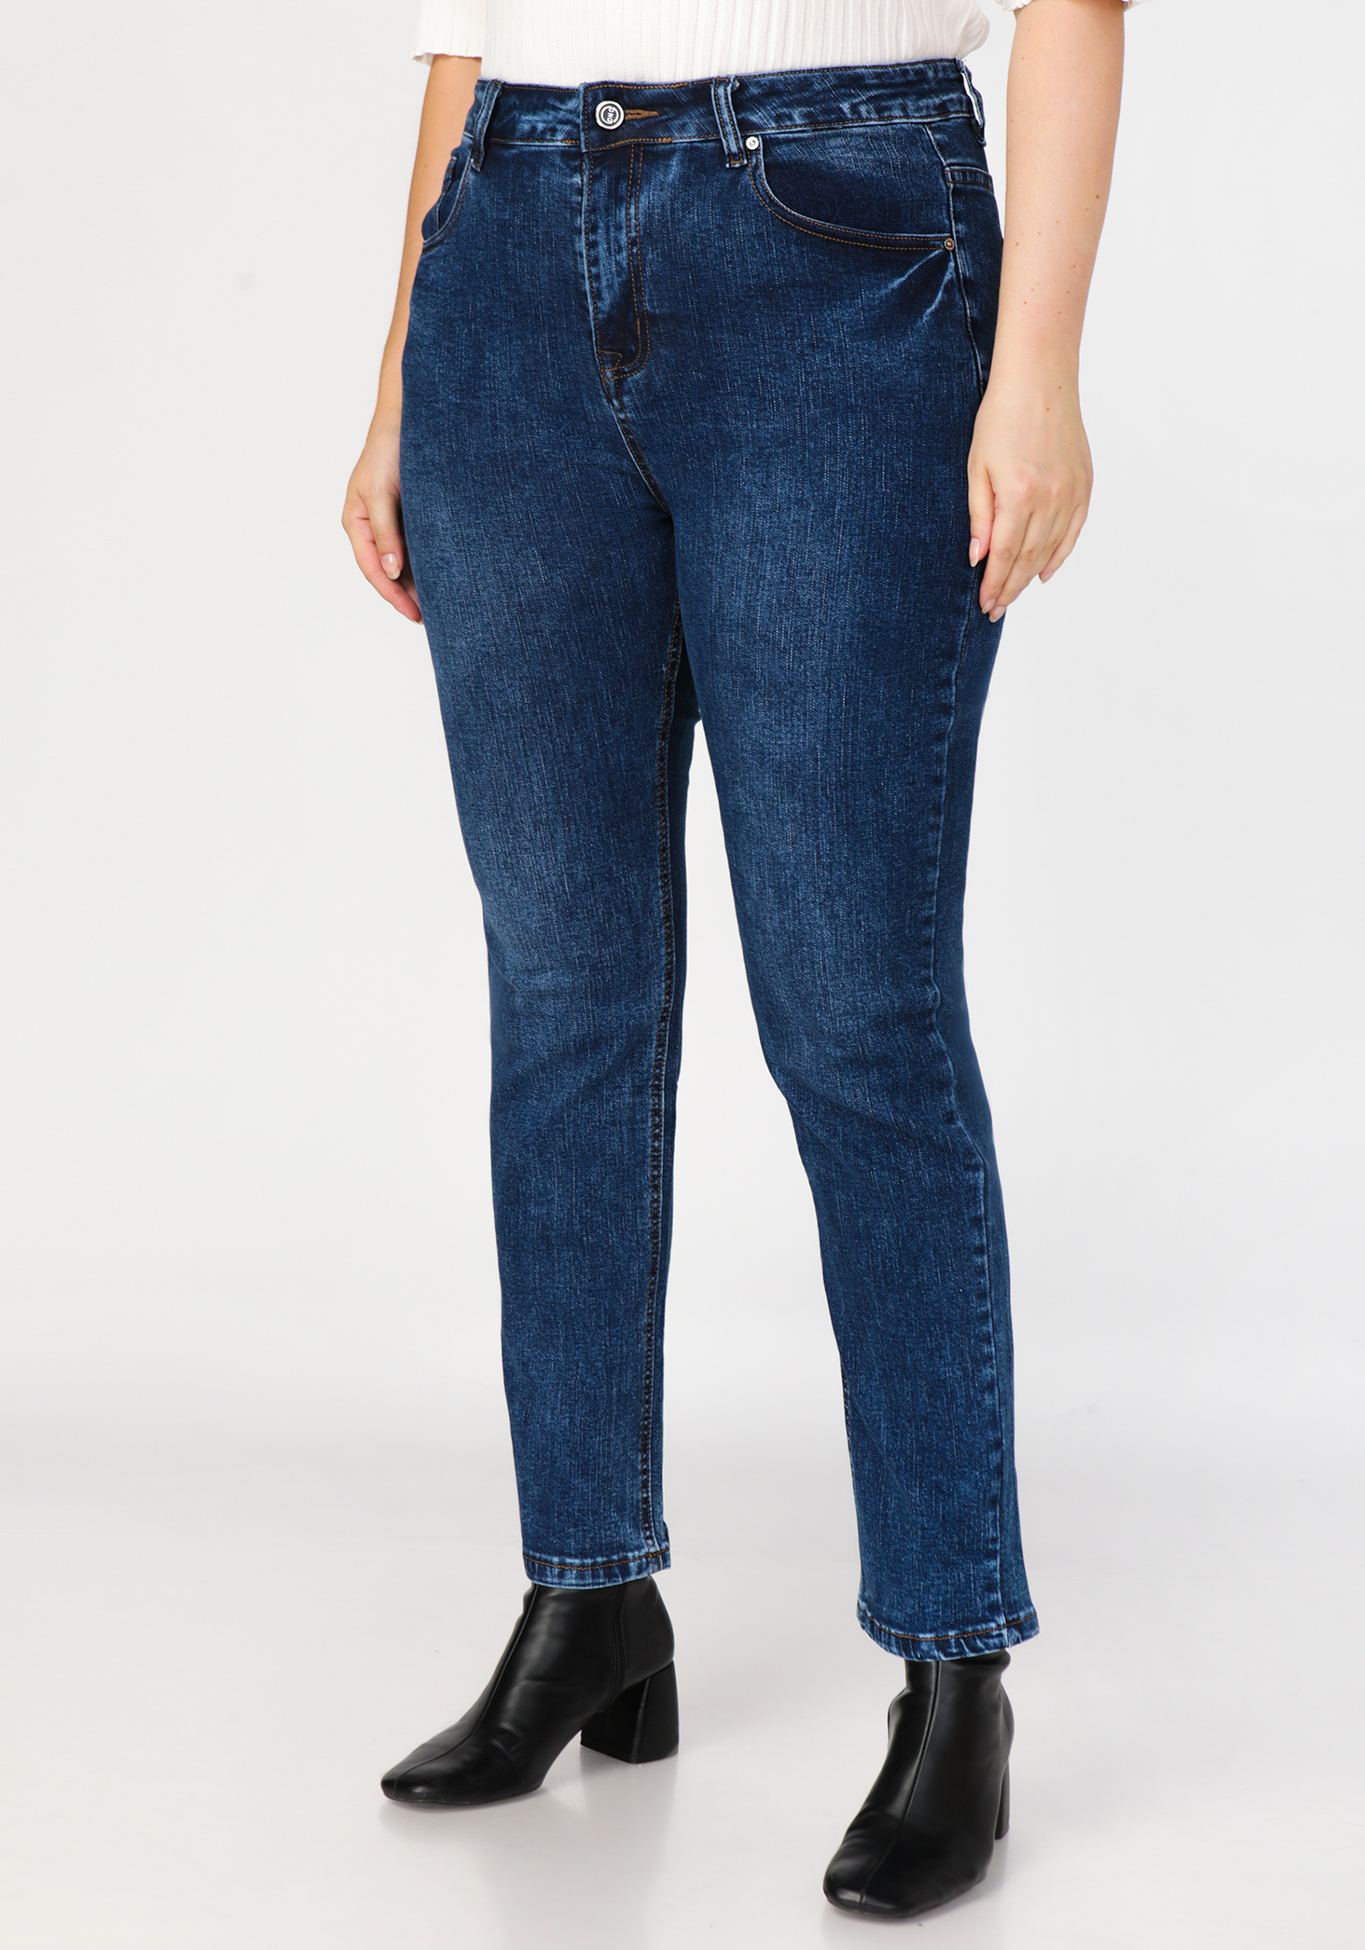 Джинсы на классическом поясе «Эмили», размер 50, цвет джинсовый